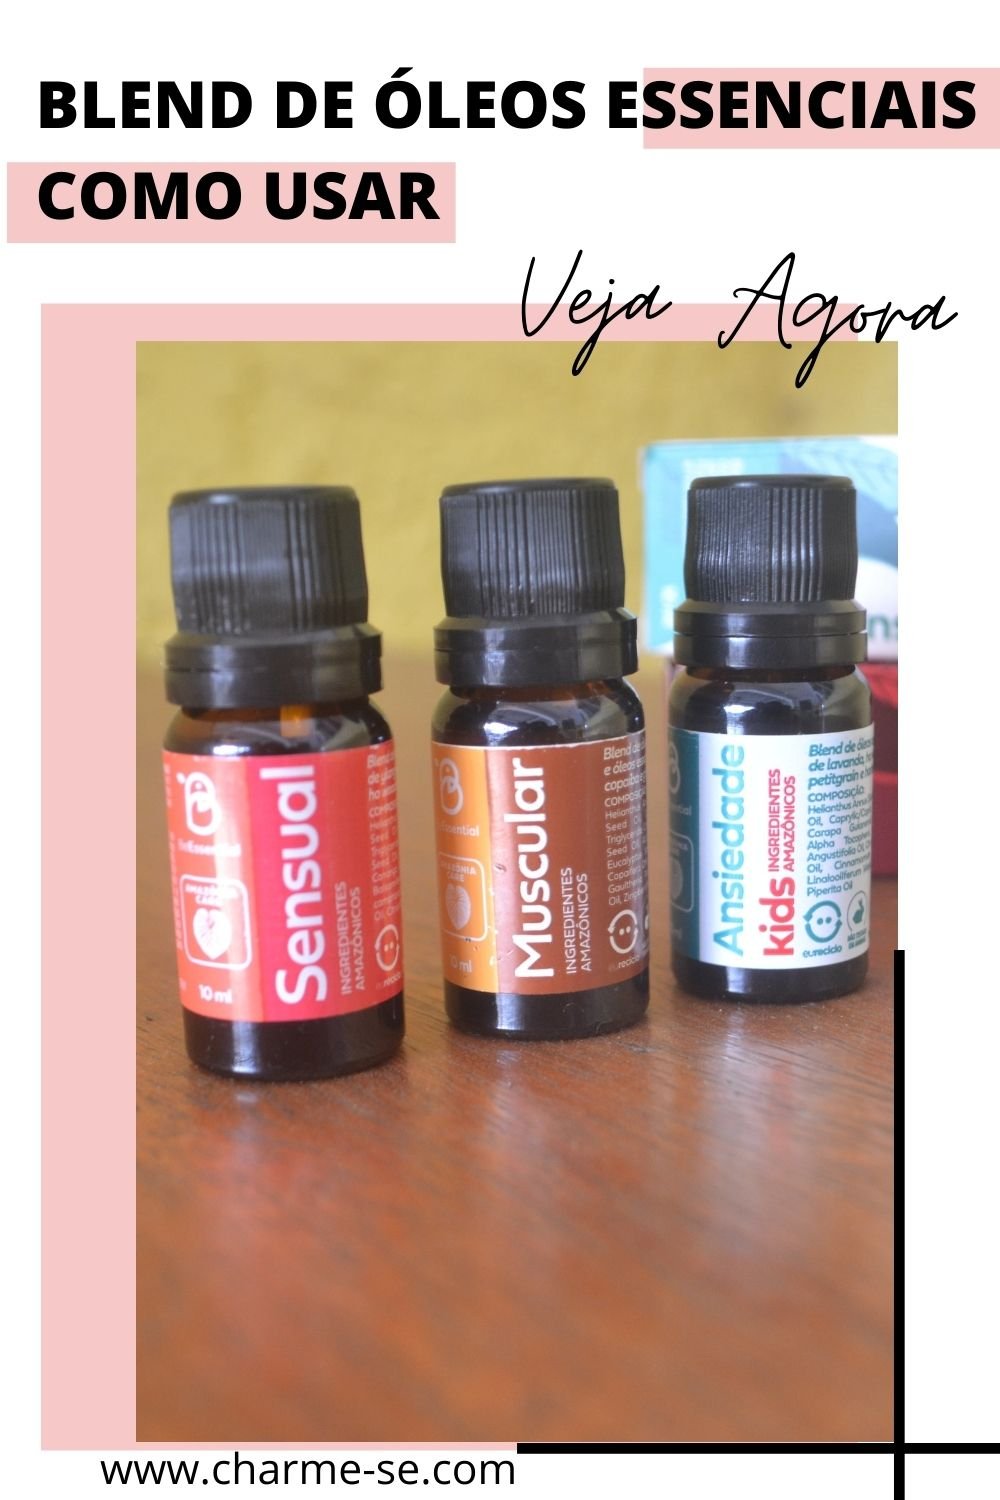 Blend de óleos essenciais o poder da aromaterapia na saúde